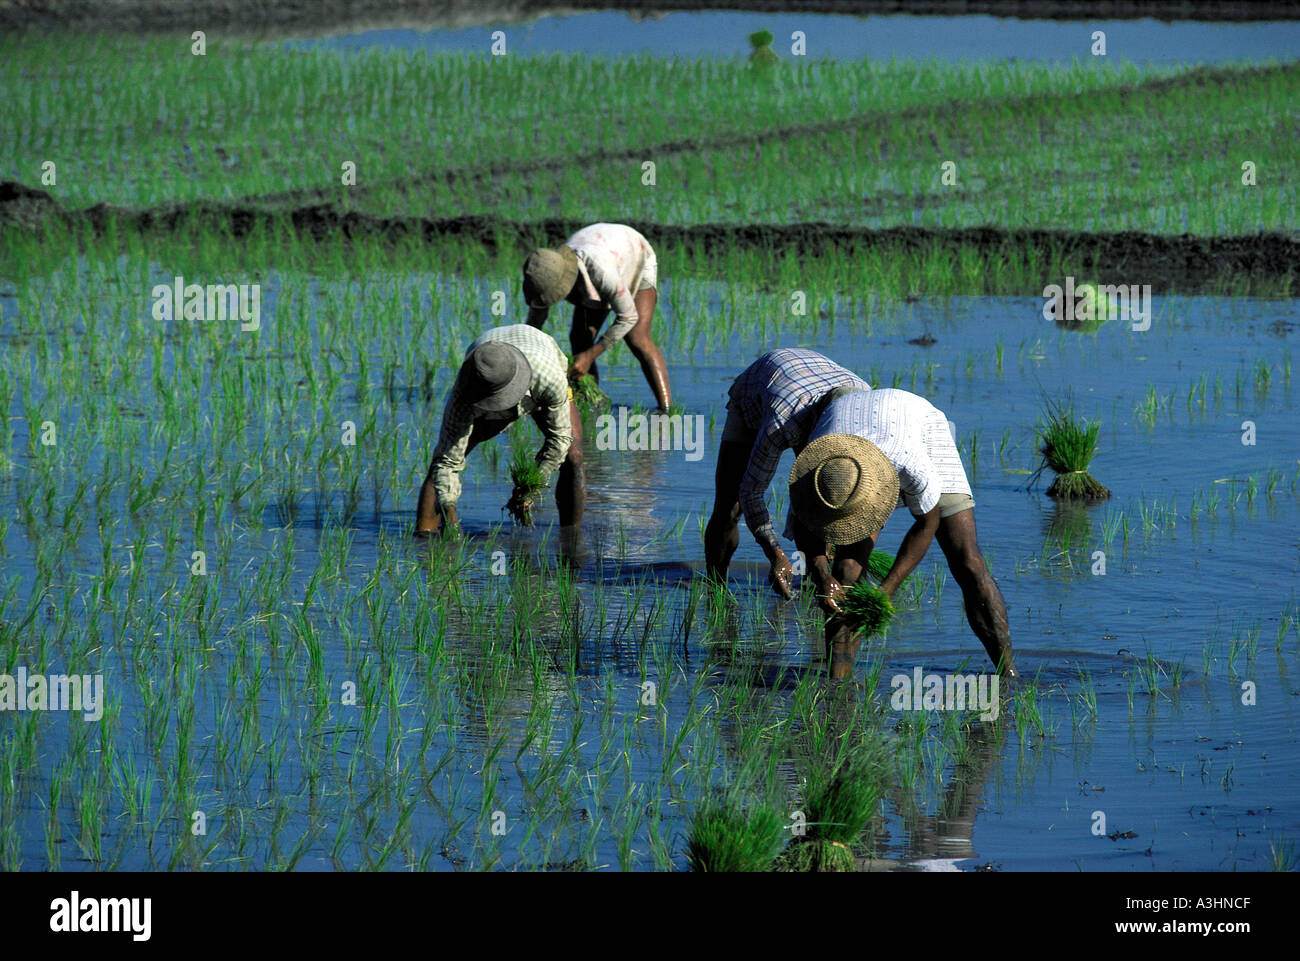 Agriculteur de paddy dans les rizières de la région de la vallée d'Ifugao banaue île de Luzon aux Philippines Banque D'Images